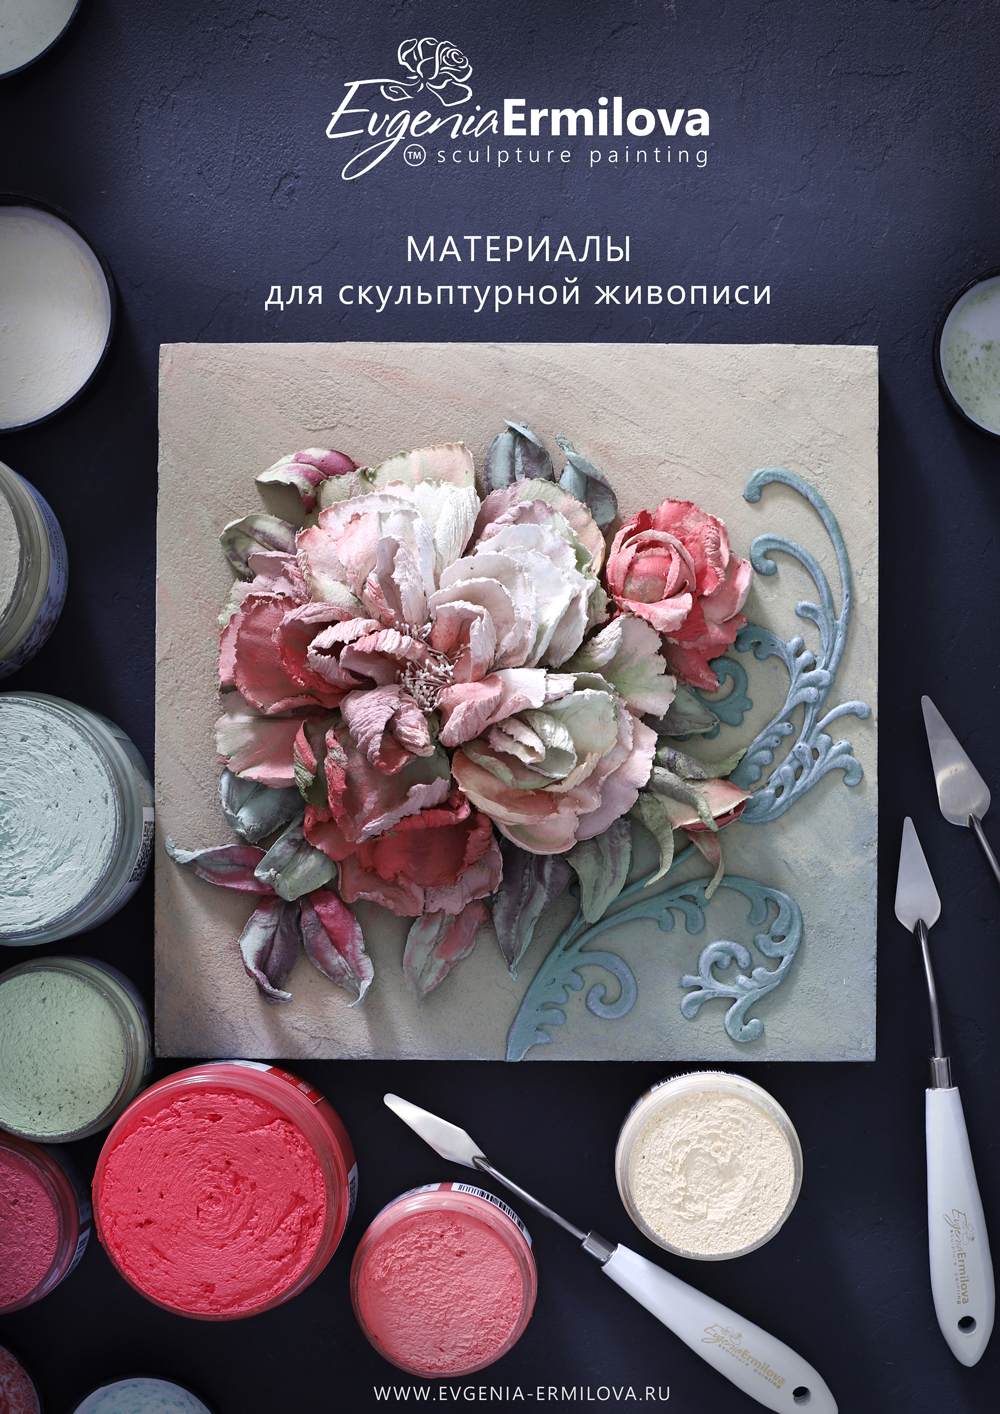 Инструменты и материалы для скульптурной живописи Евгении Ермиловой -  Набор A3 принтов Evgenia Ermilova™